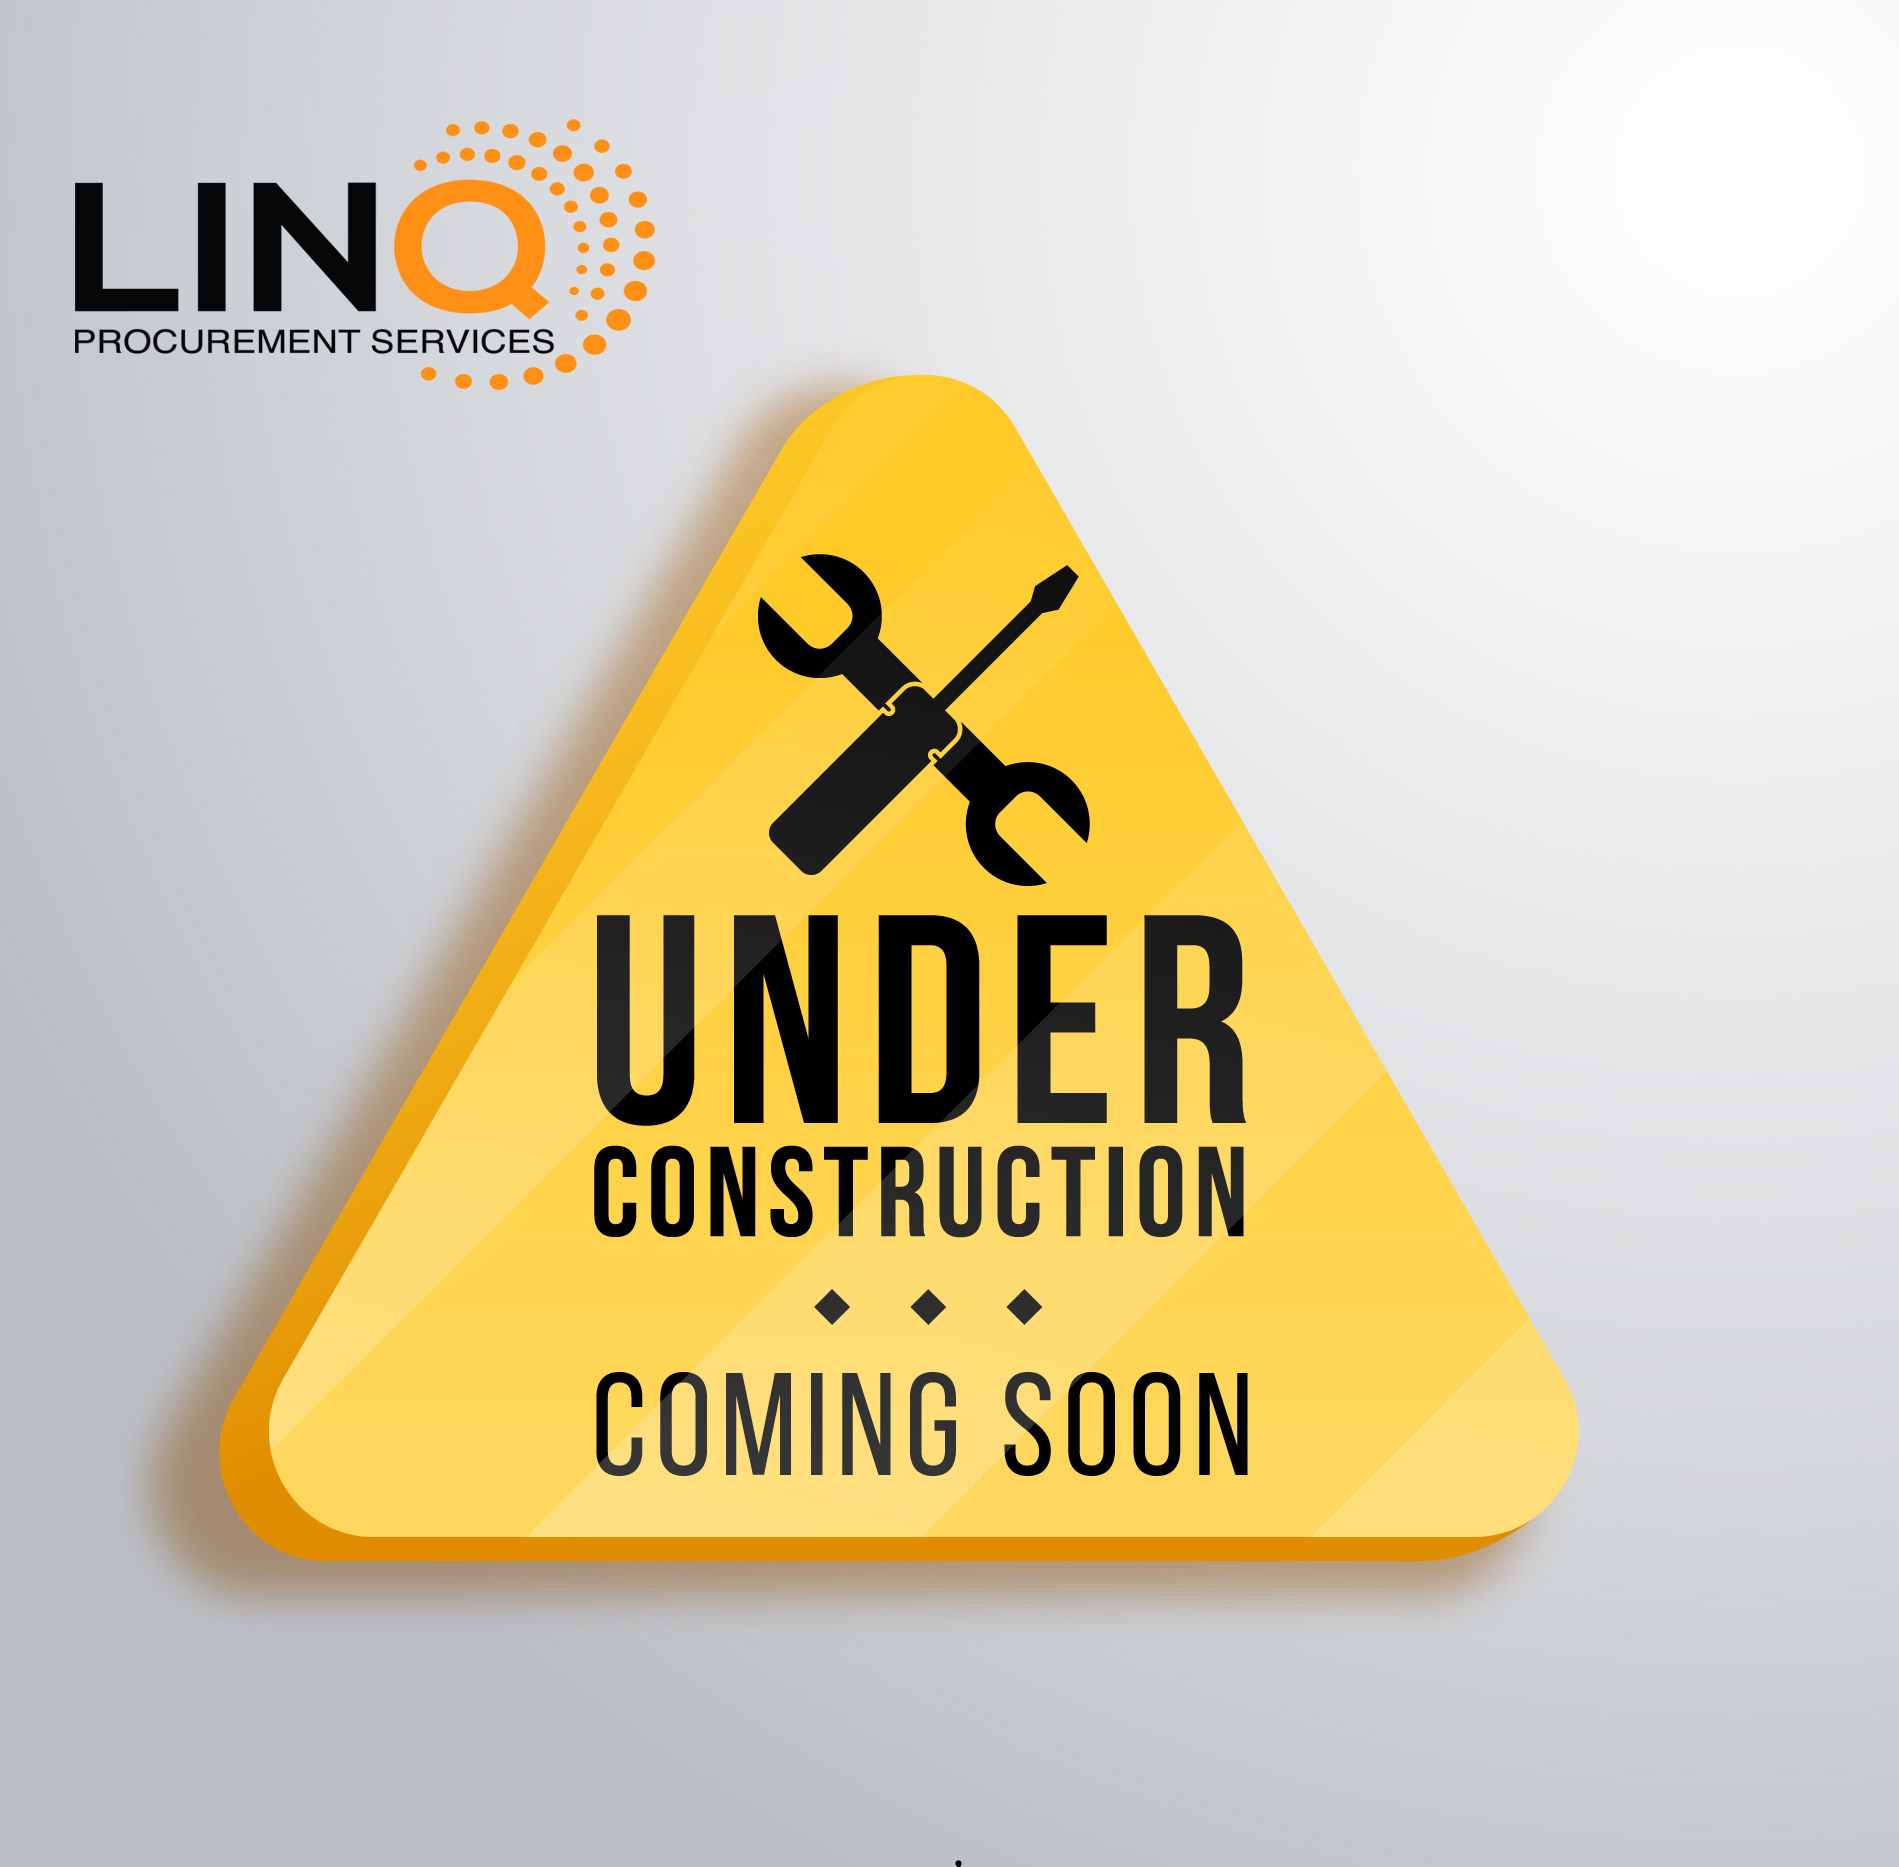 LINQ Procurement Services